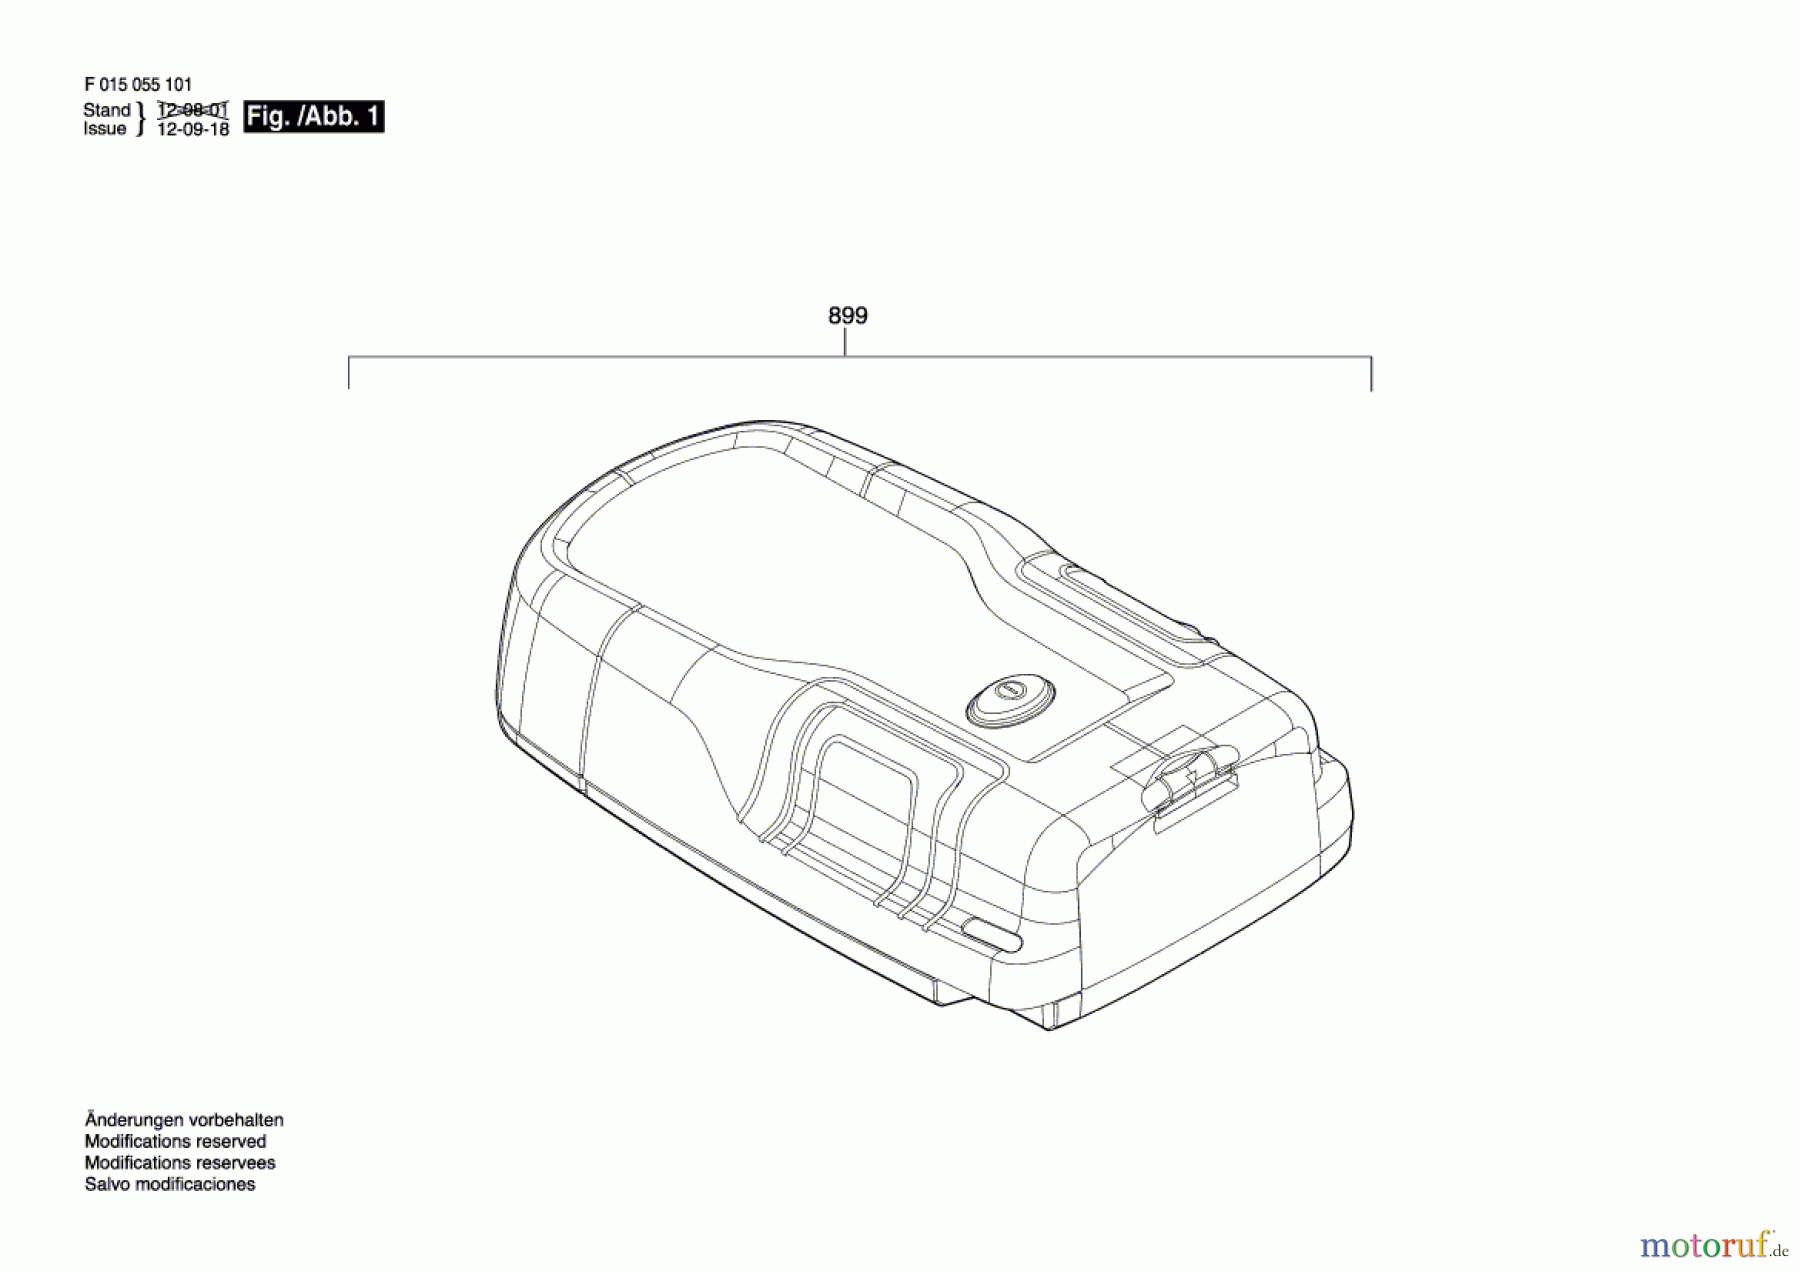  Bosch Werkzeug Universalortungsgerät DT0551 Seite 1